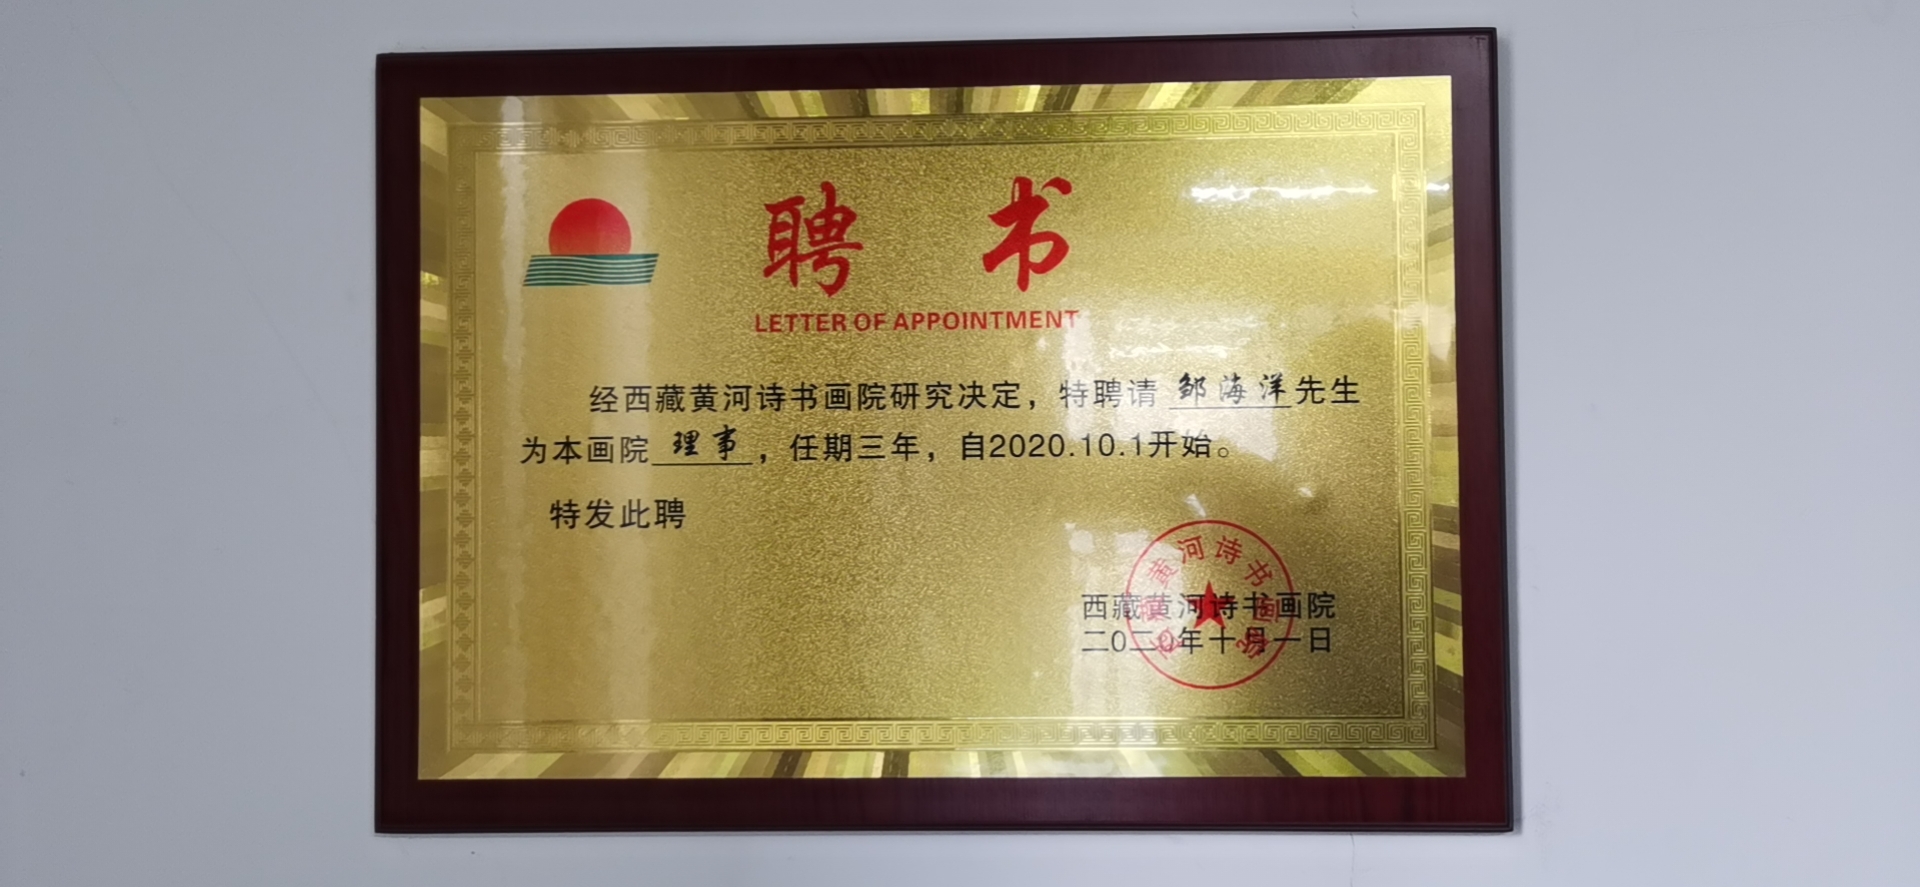 公司法人被西藏黄河诗书画院聘为理事